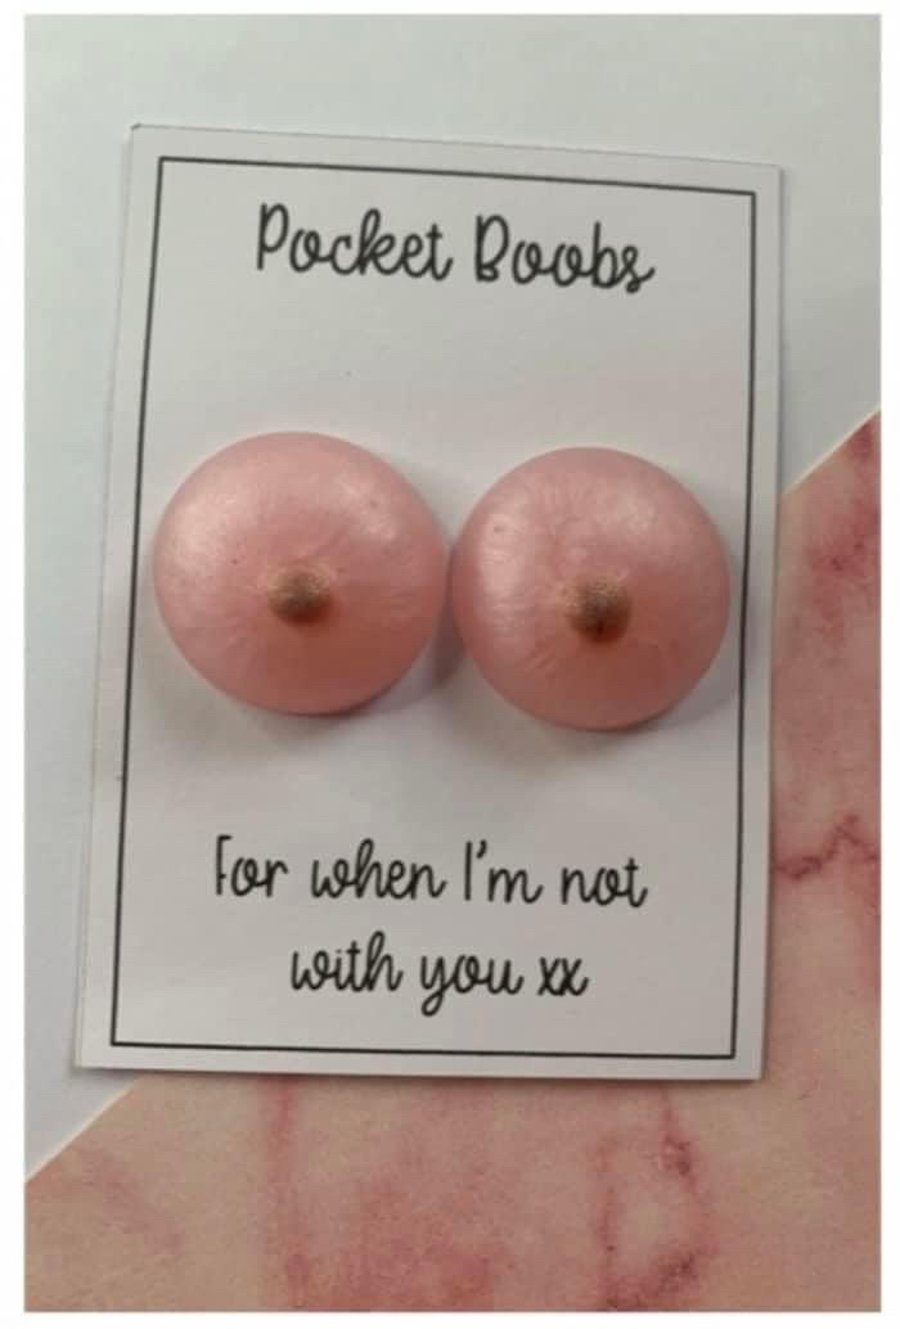 Pocket boobs